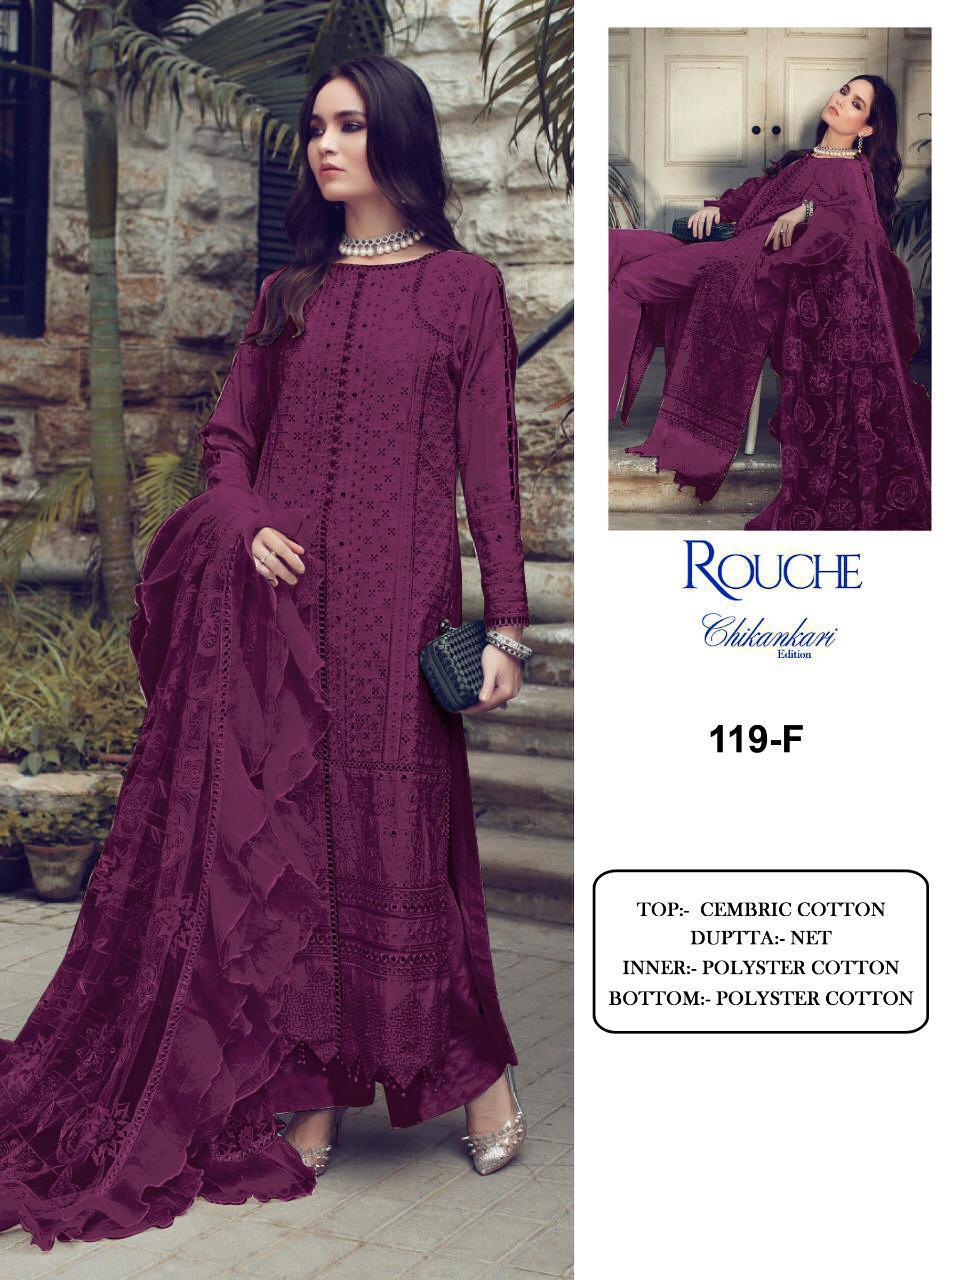 Pakistani Suits Rouche Chikankari Edition KF 119-F